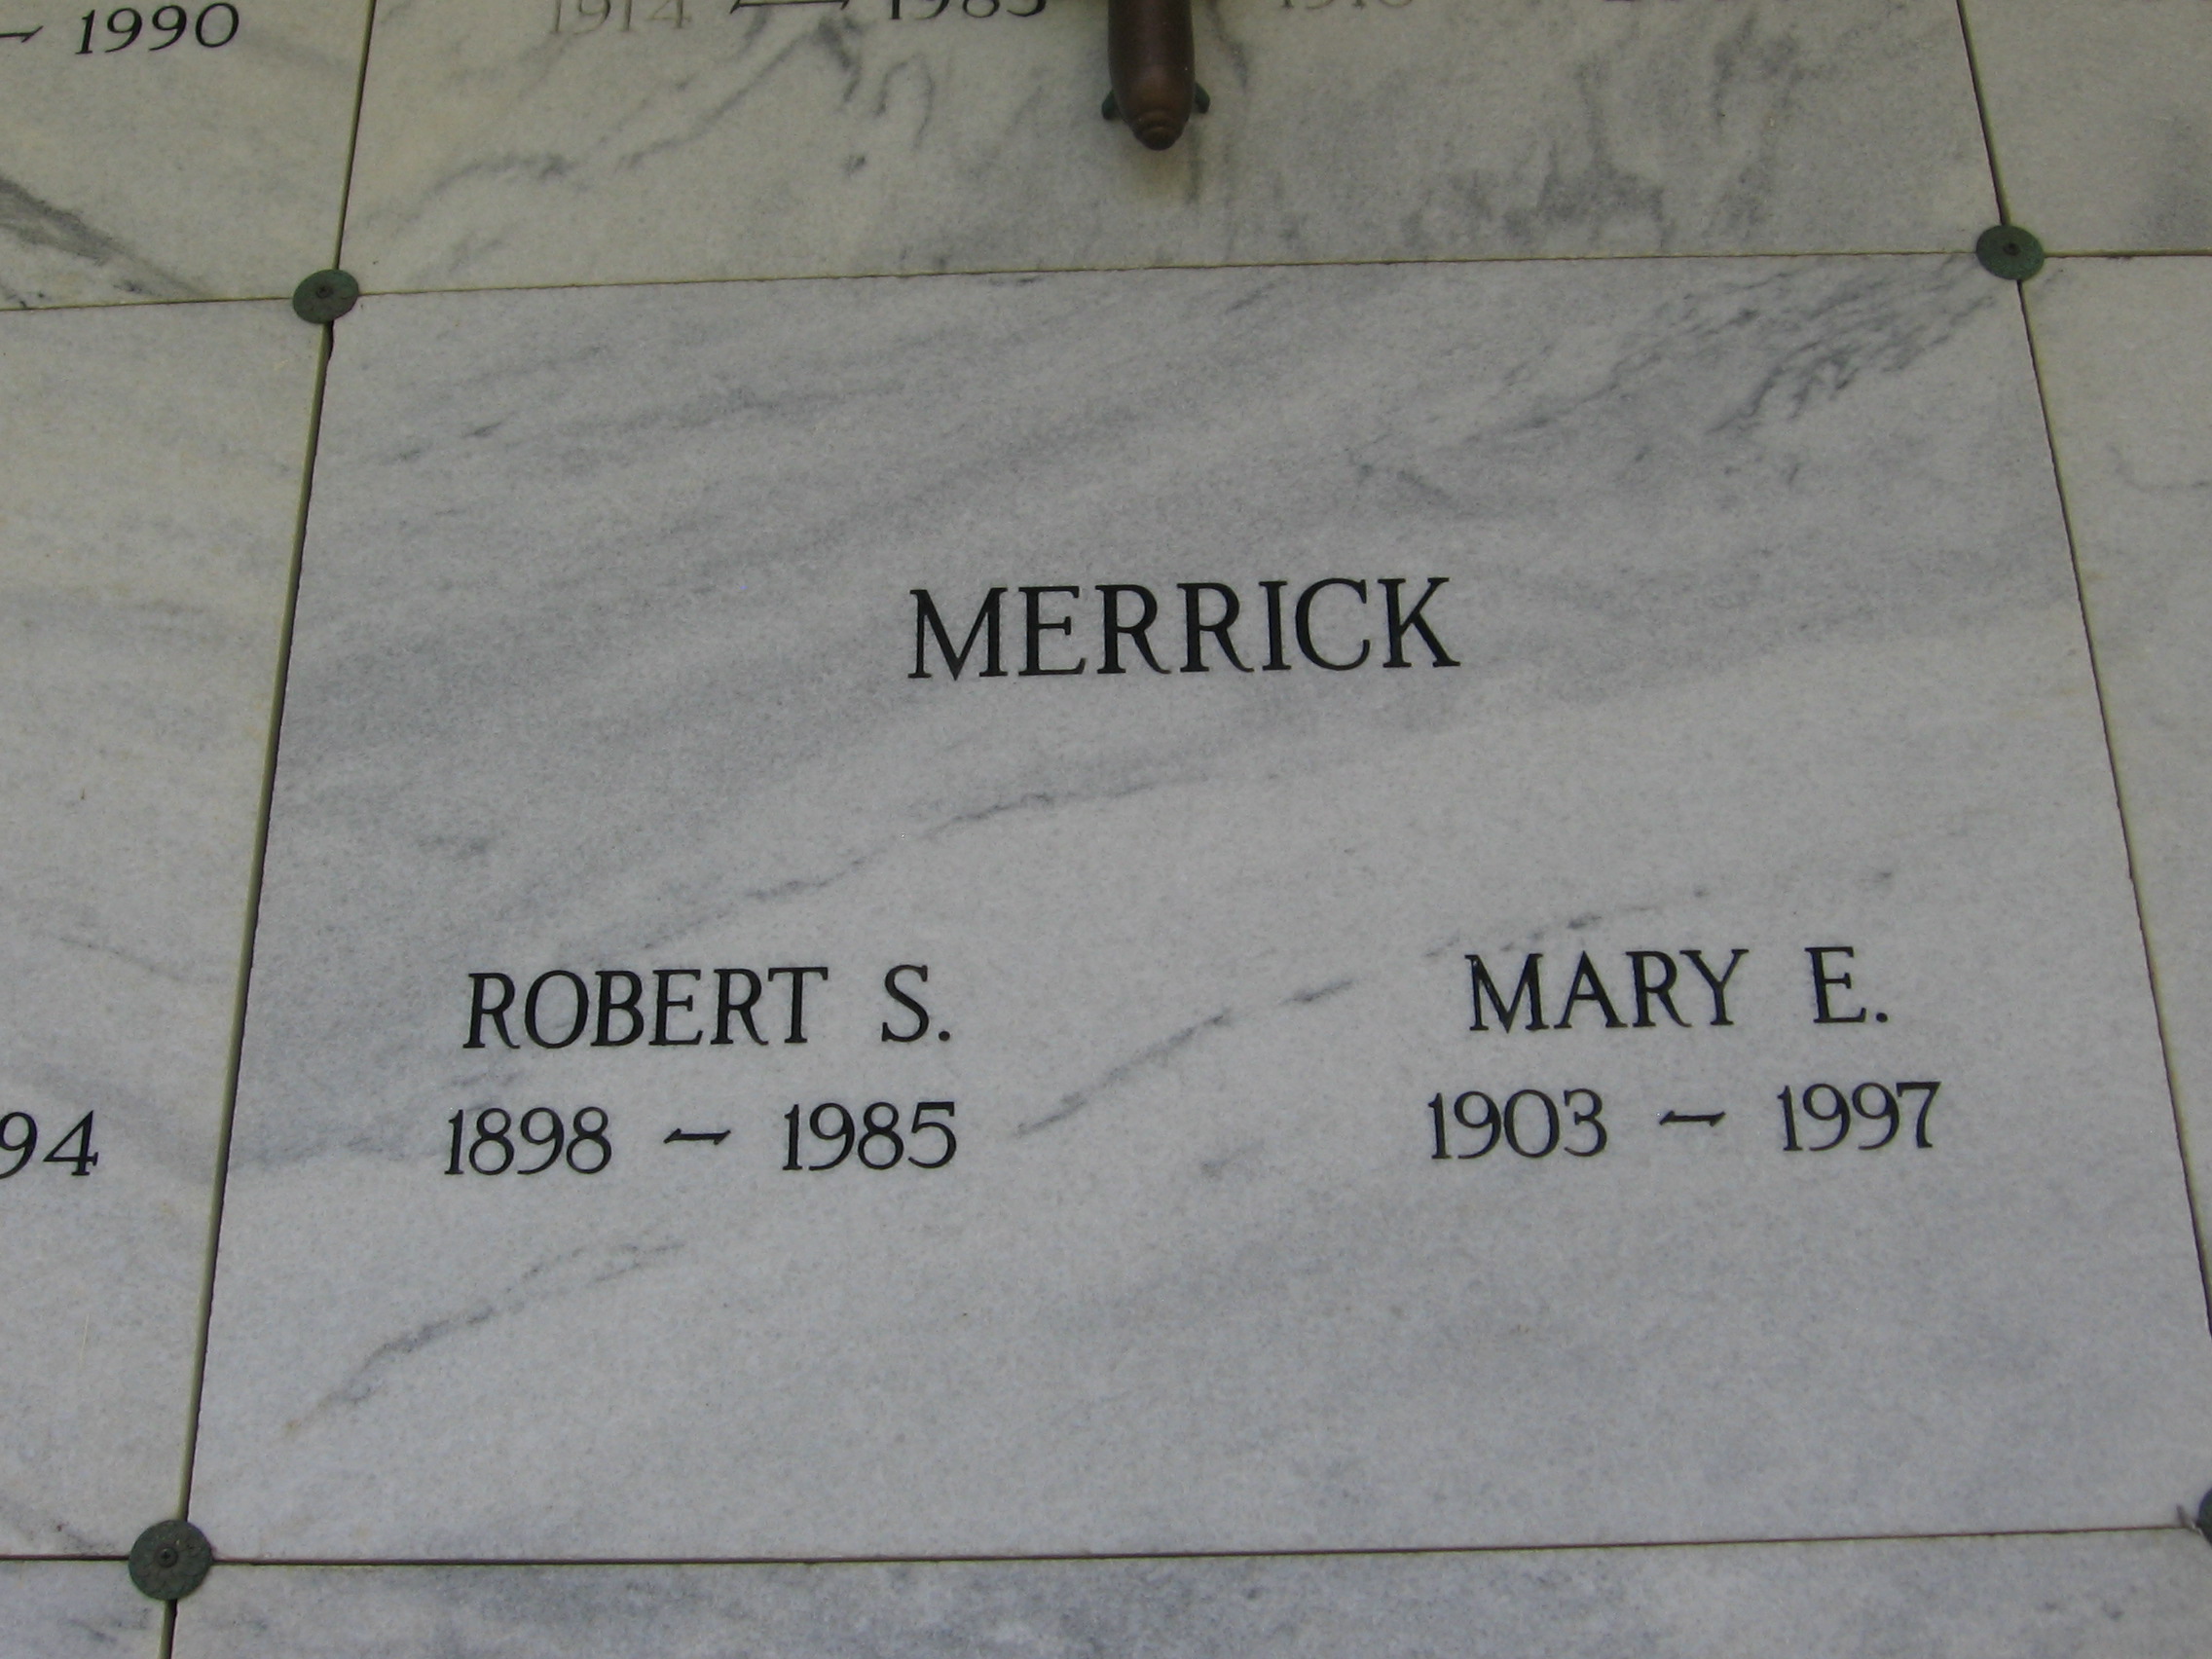 Mary E Merrick